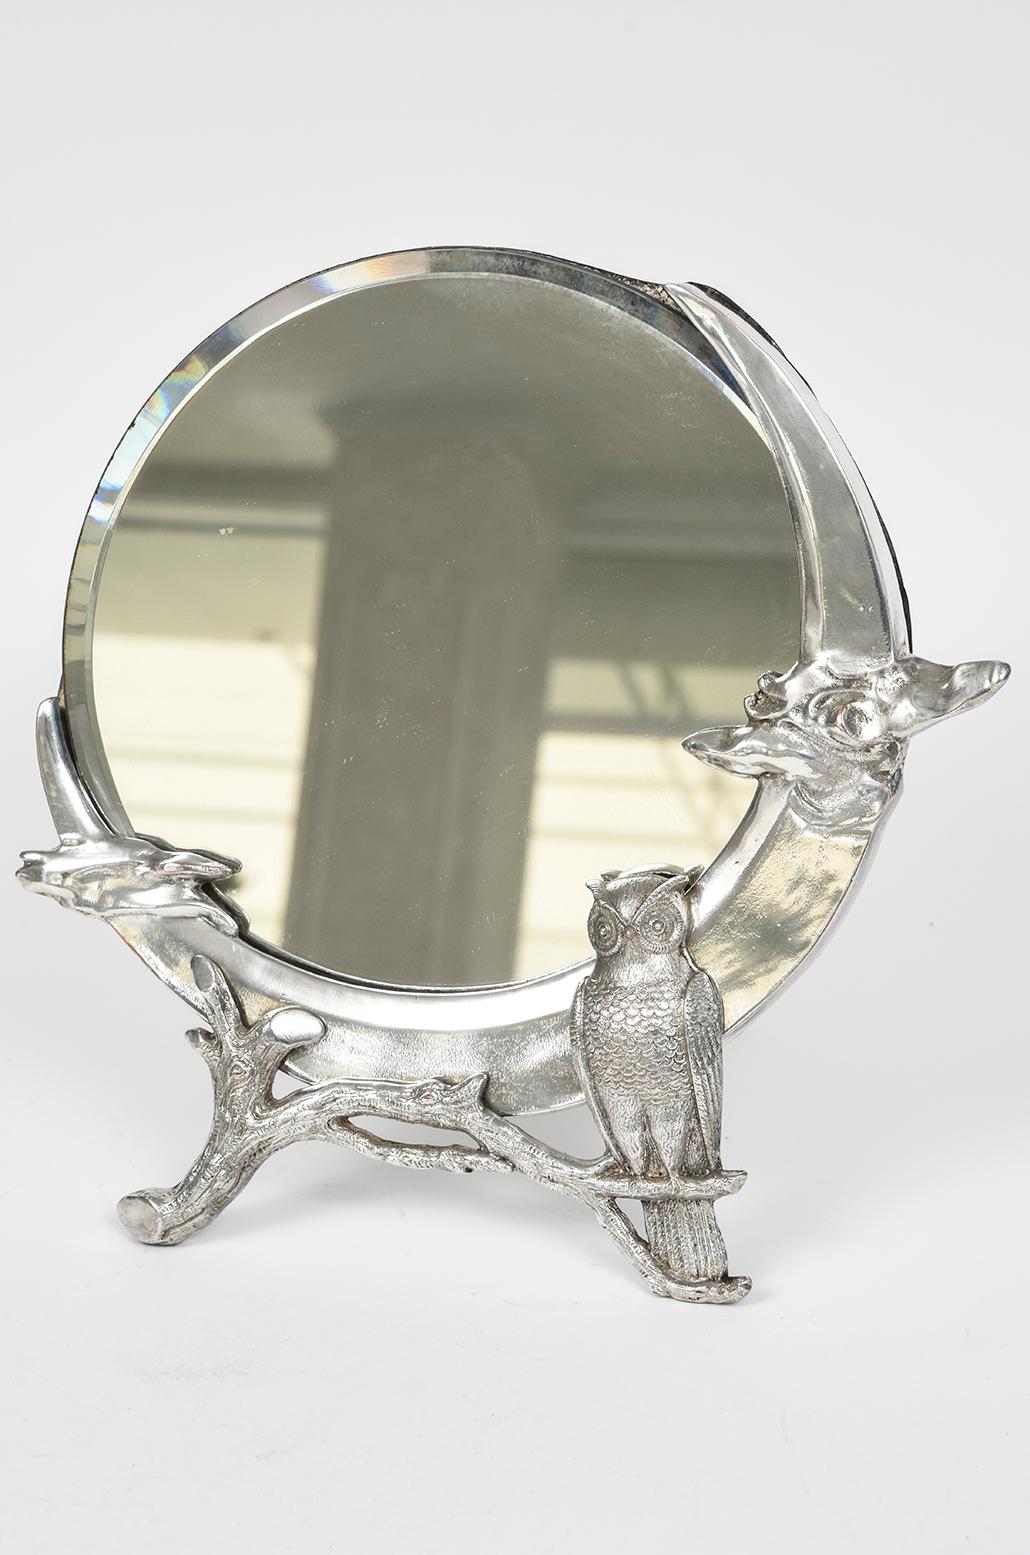 Magnifique miroir de commode avec le miroir d'origine en verre biseauté serti d'un hibou figuratif en trois dimensions sur une branche avec un nuage de chaque côté.  La profondeur est de 1 1/8